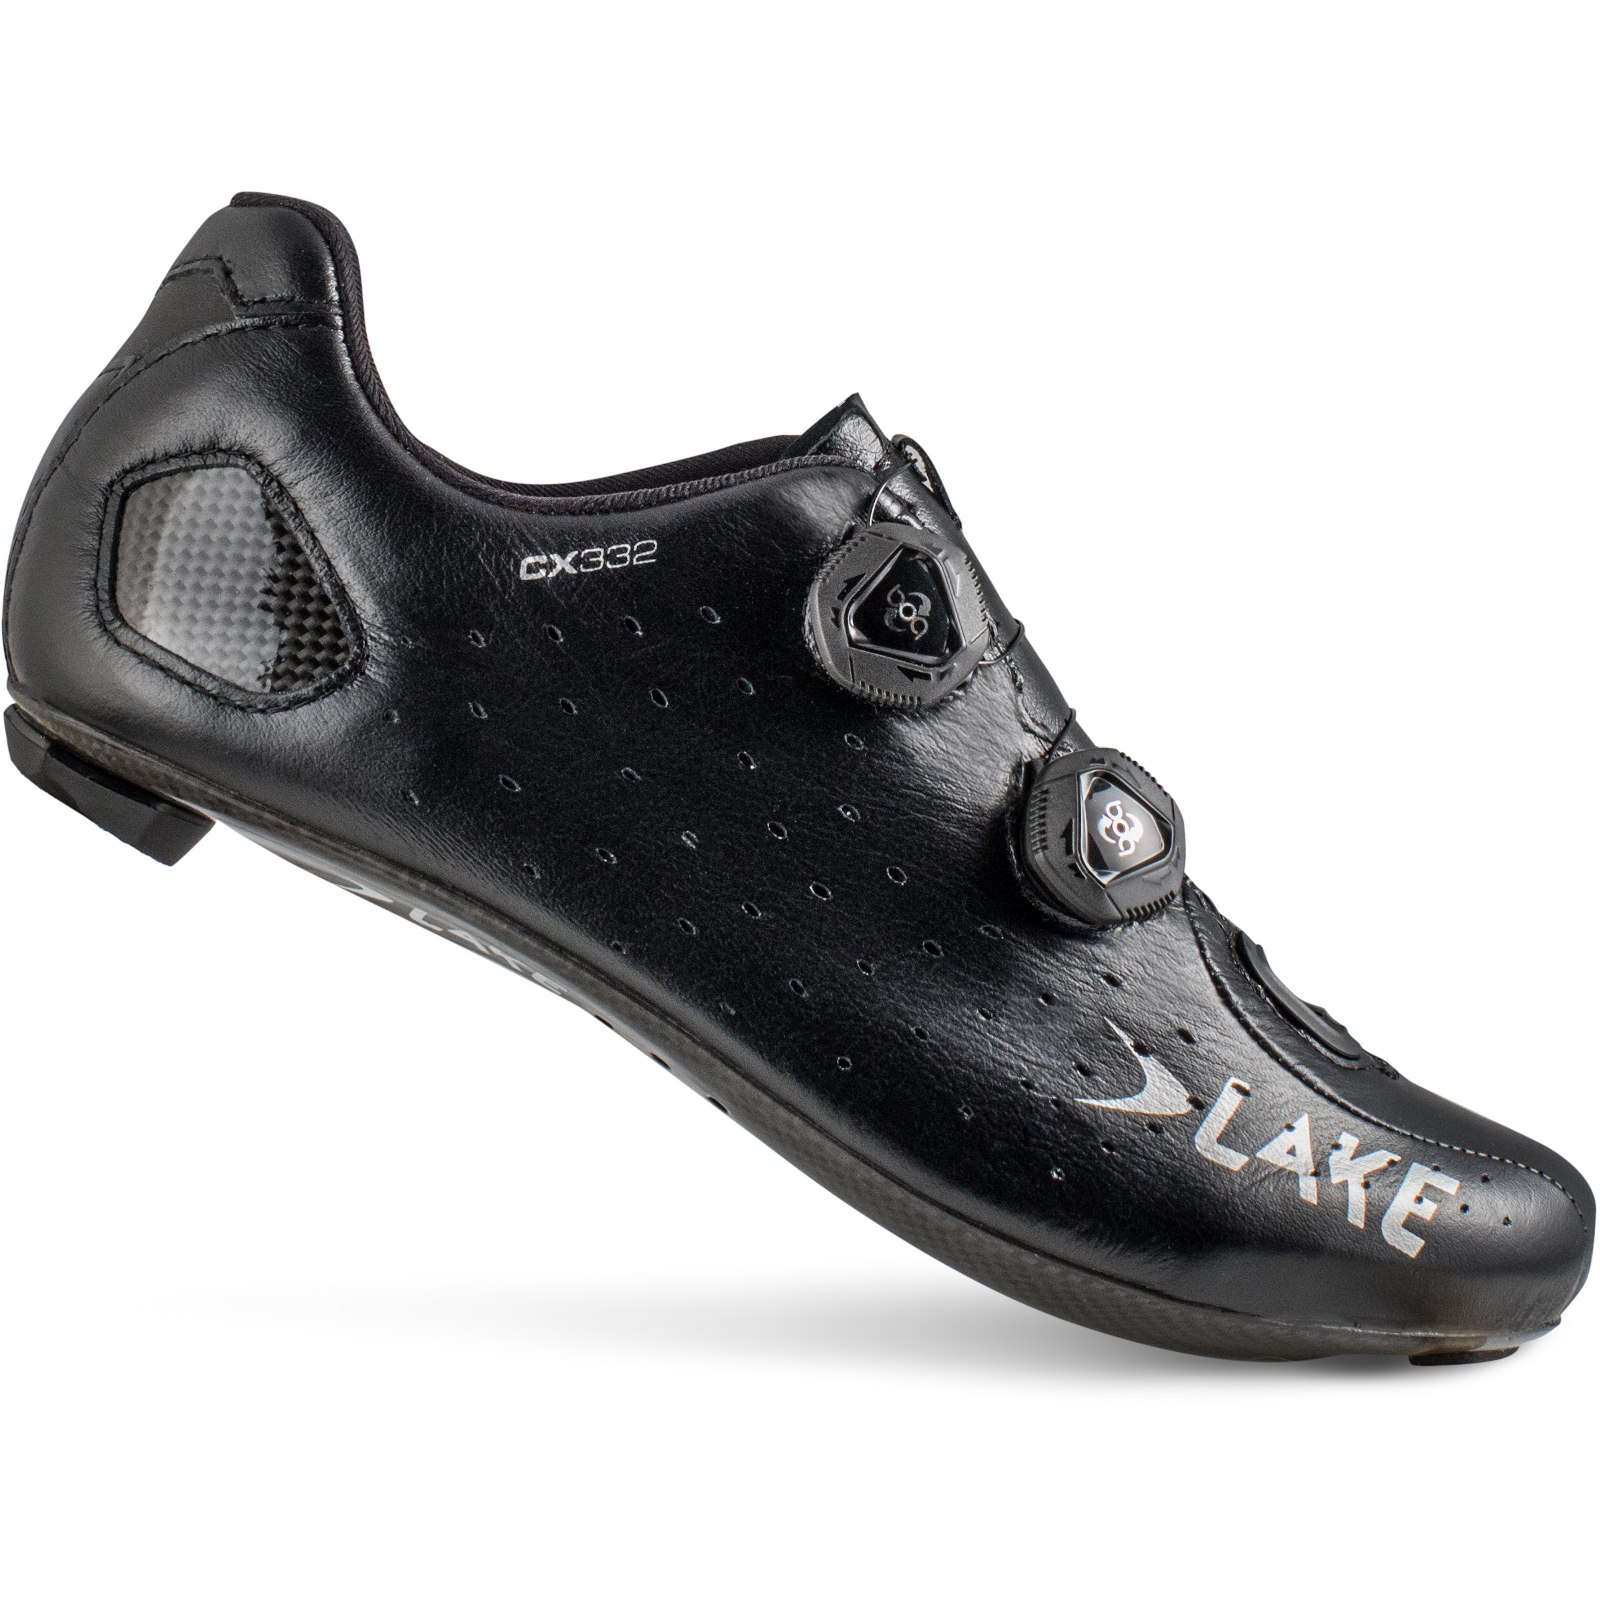 Produktbild von Lake CX 332-X Wide Rennradschuh - schwarz / silber